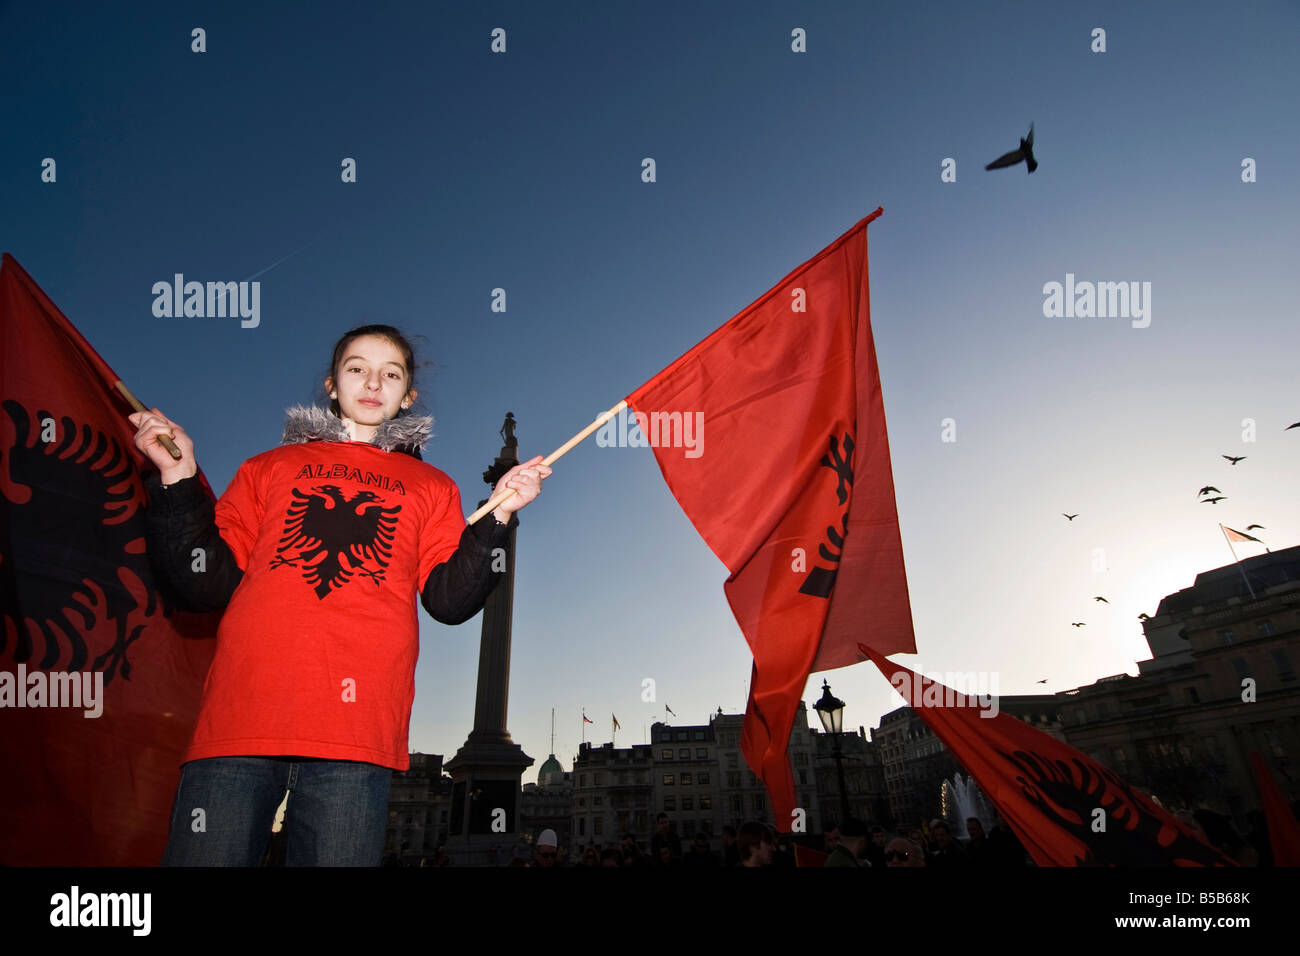 zurka ob razglasitvi svobodnega Kosova na Trafalgar sqare v Londonu 17 2 08 M T Stock Photo